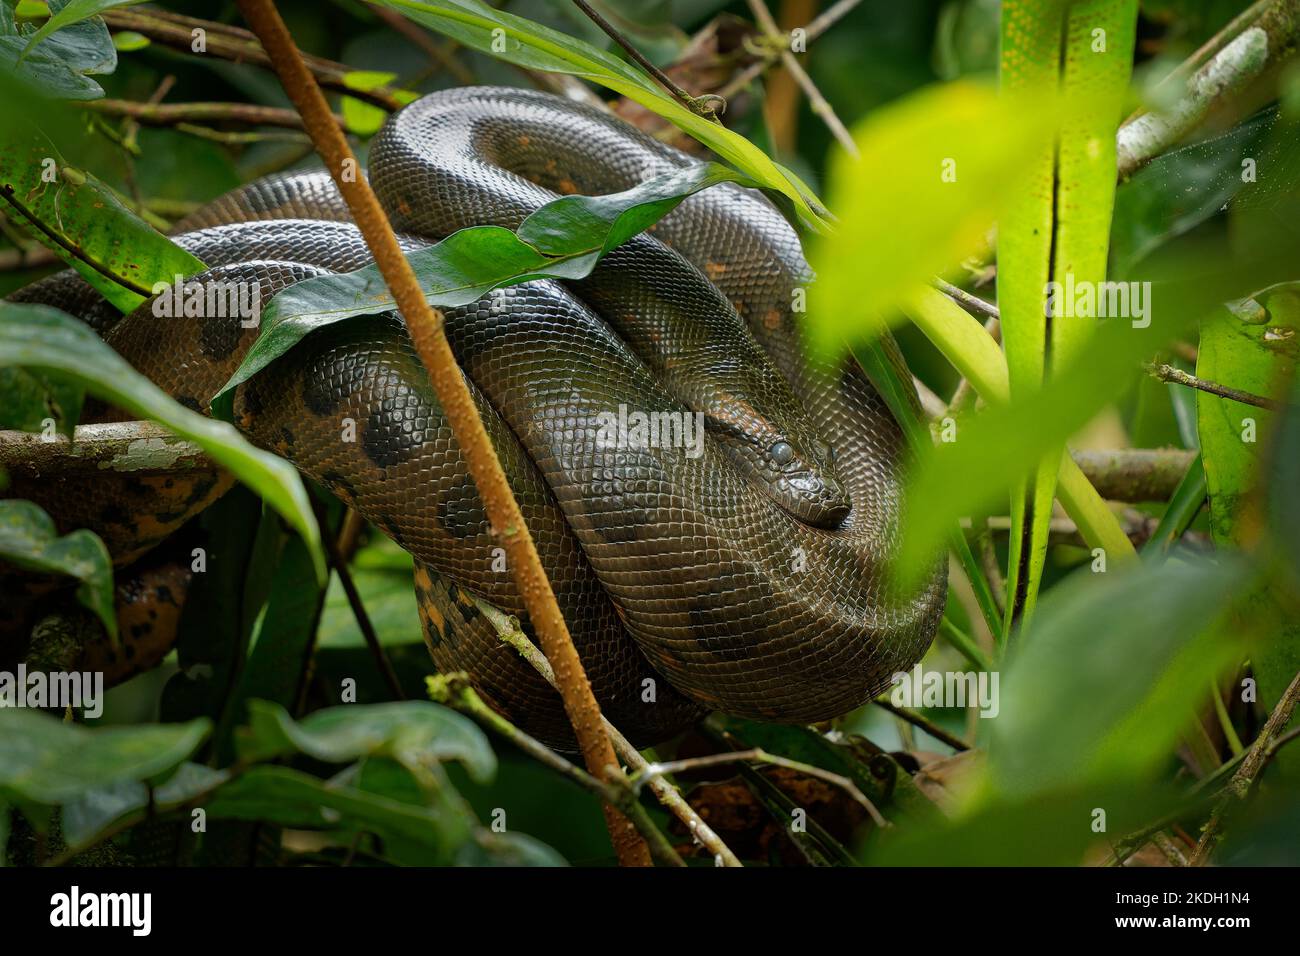 Vert Anaconda - Eunectes murinus aussi géant, commun anaconda, commun eau boa ou sucuri, le serpent le plus connu, trouvé en Amérique du Sud, non-venin Banque D'Images